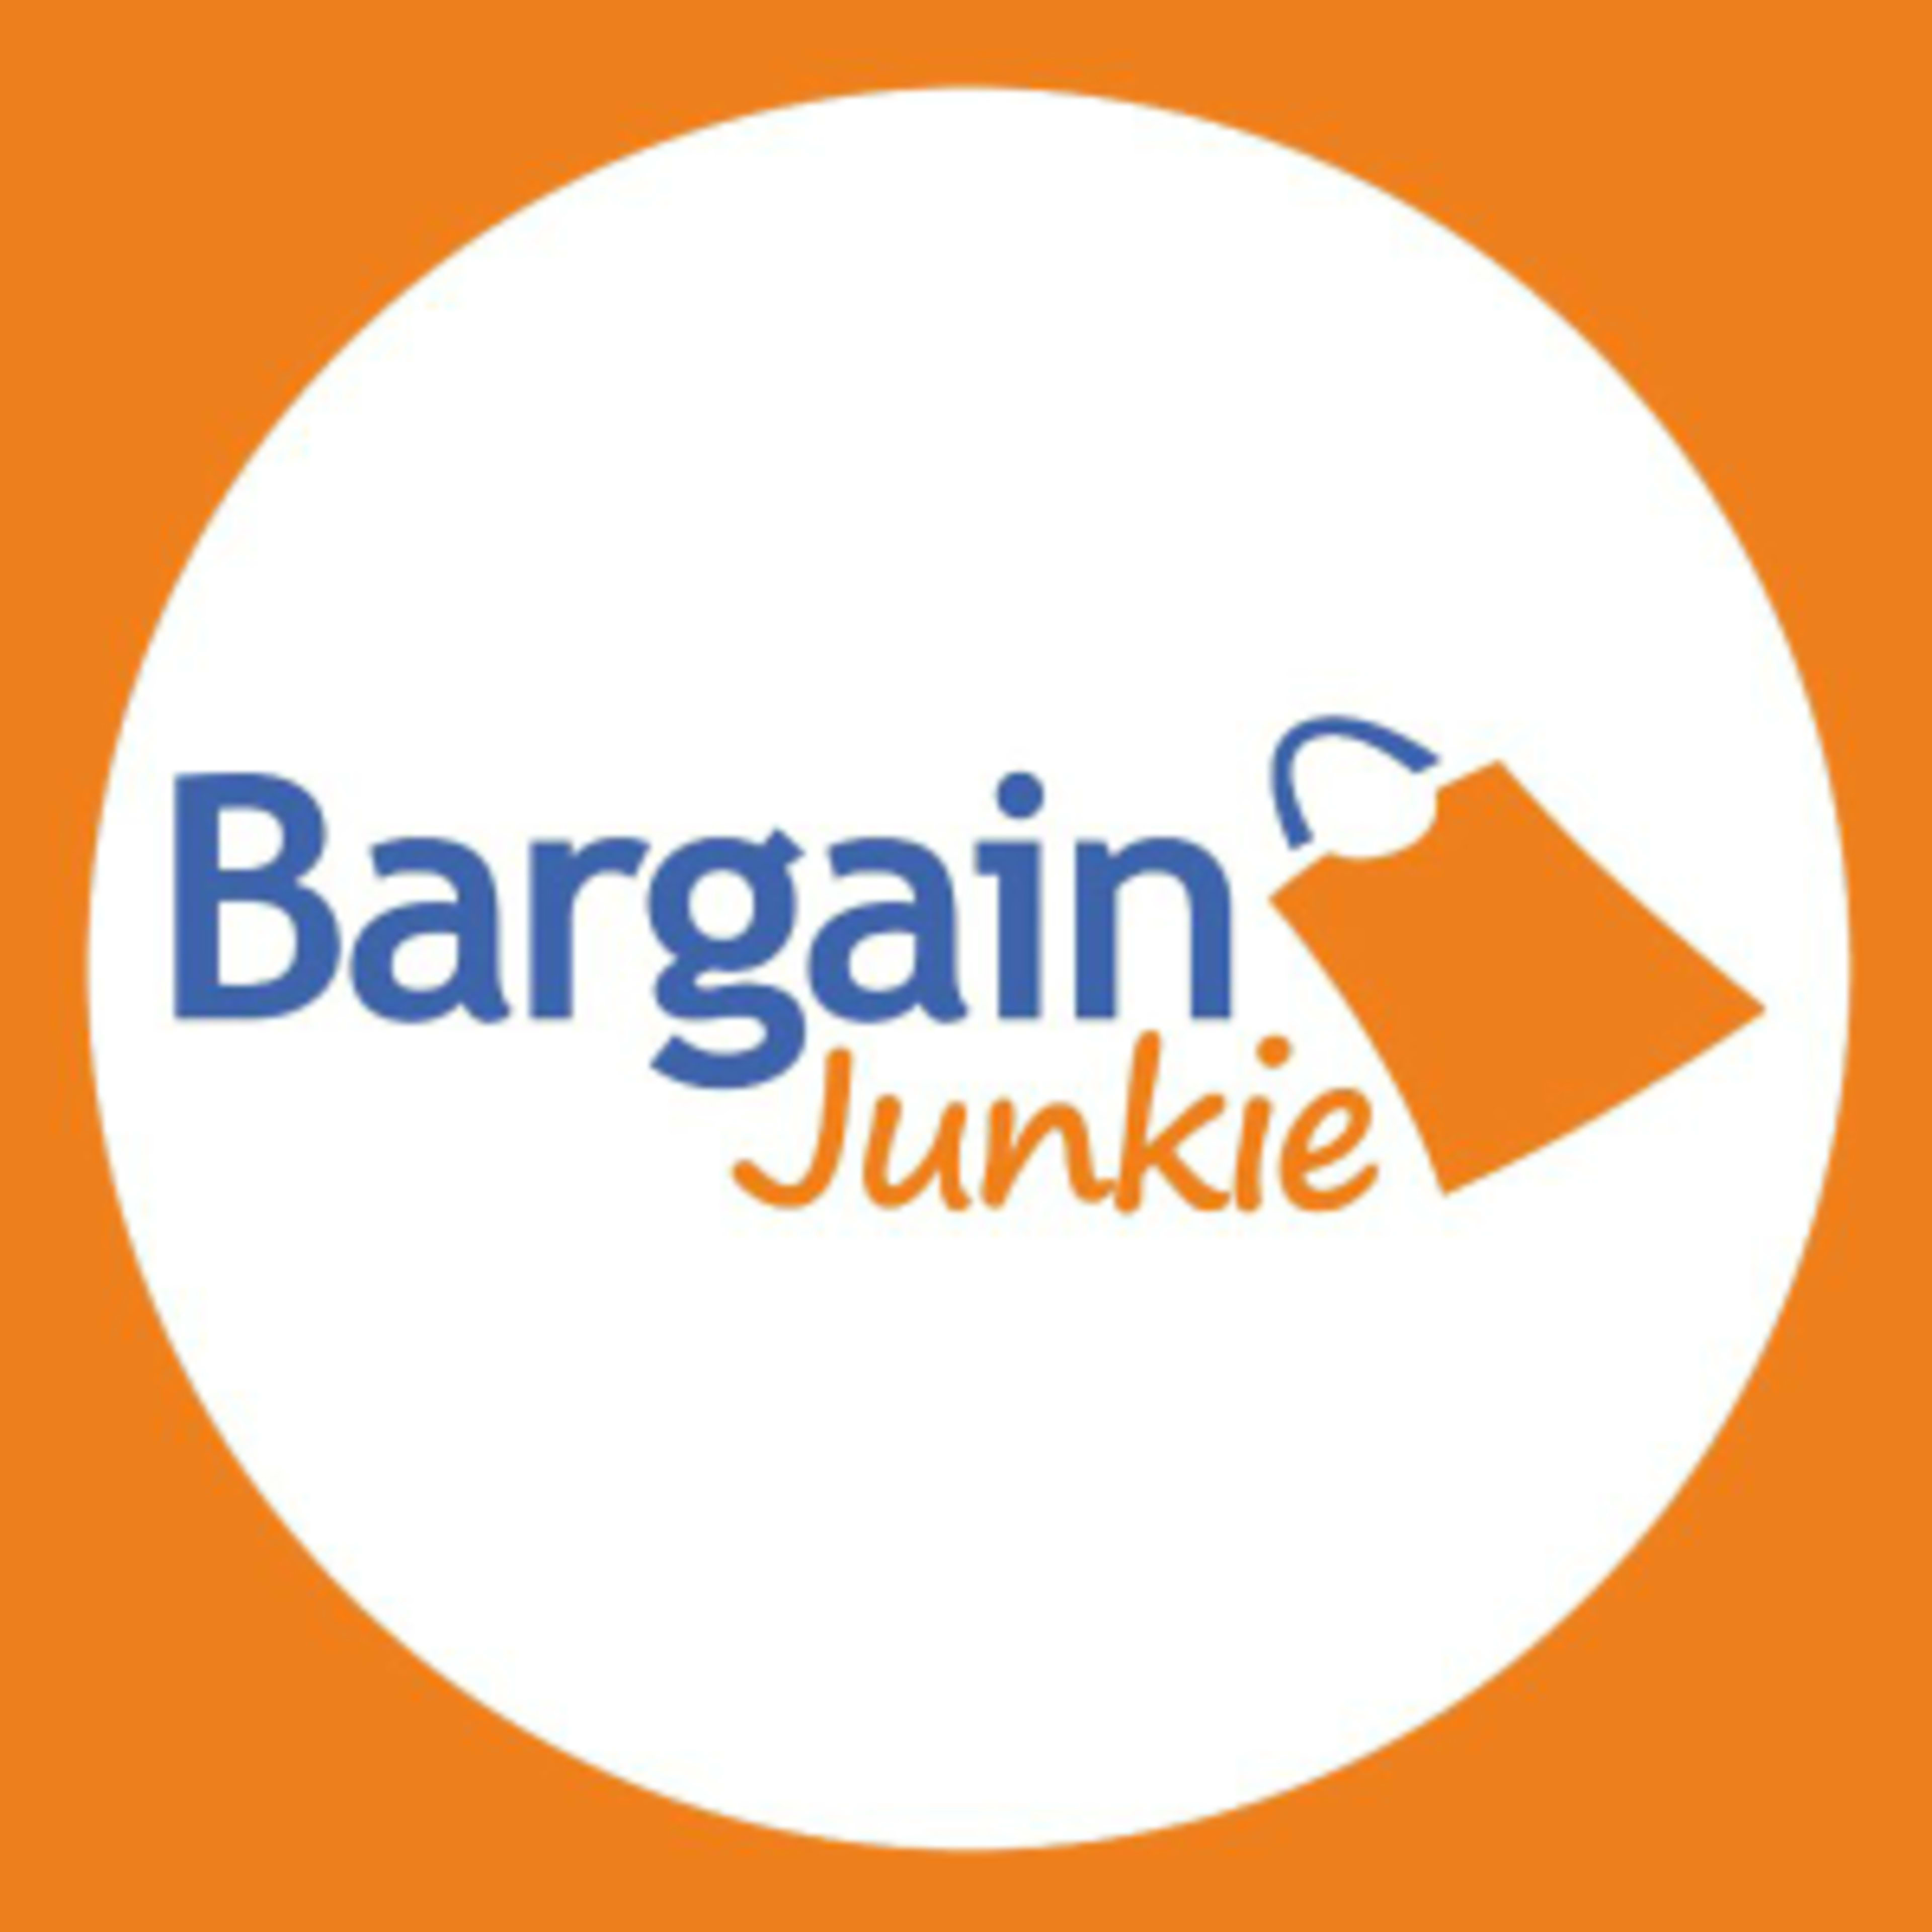 Bargain Junkie HoldingsCode